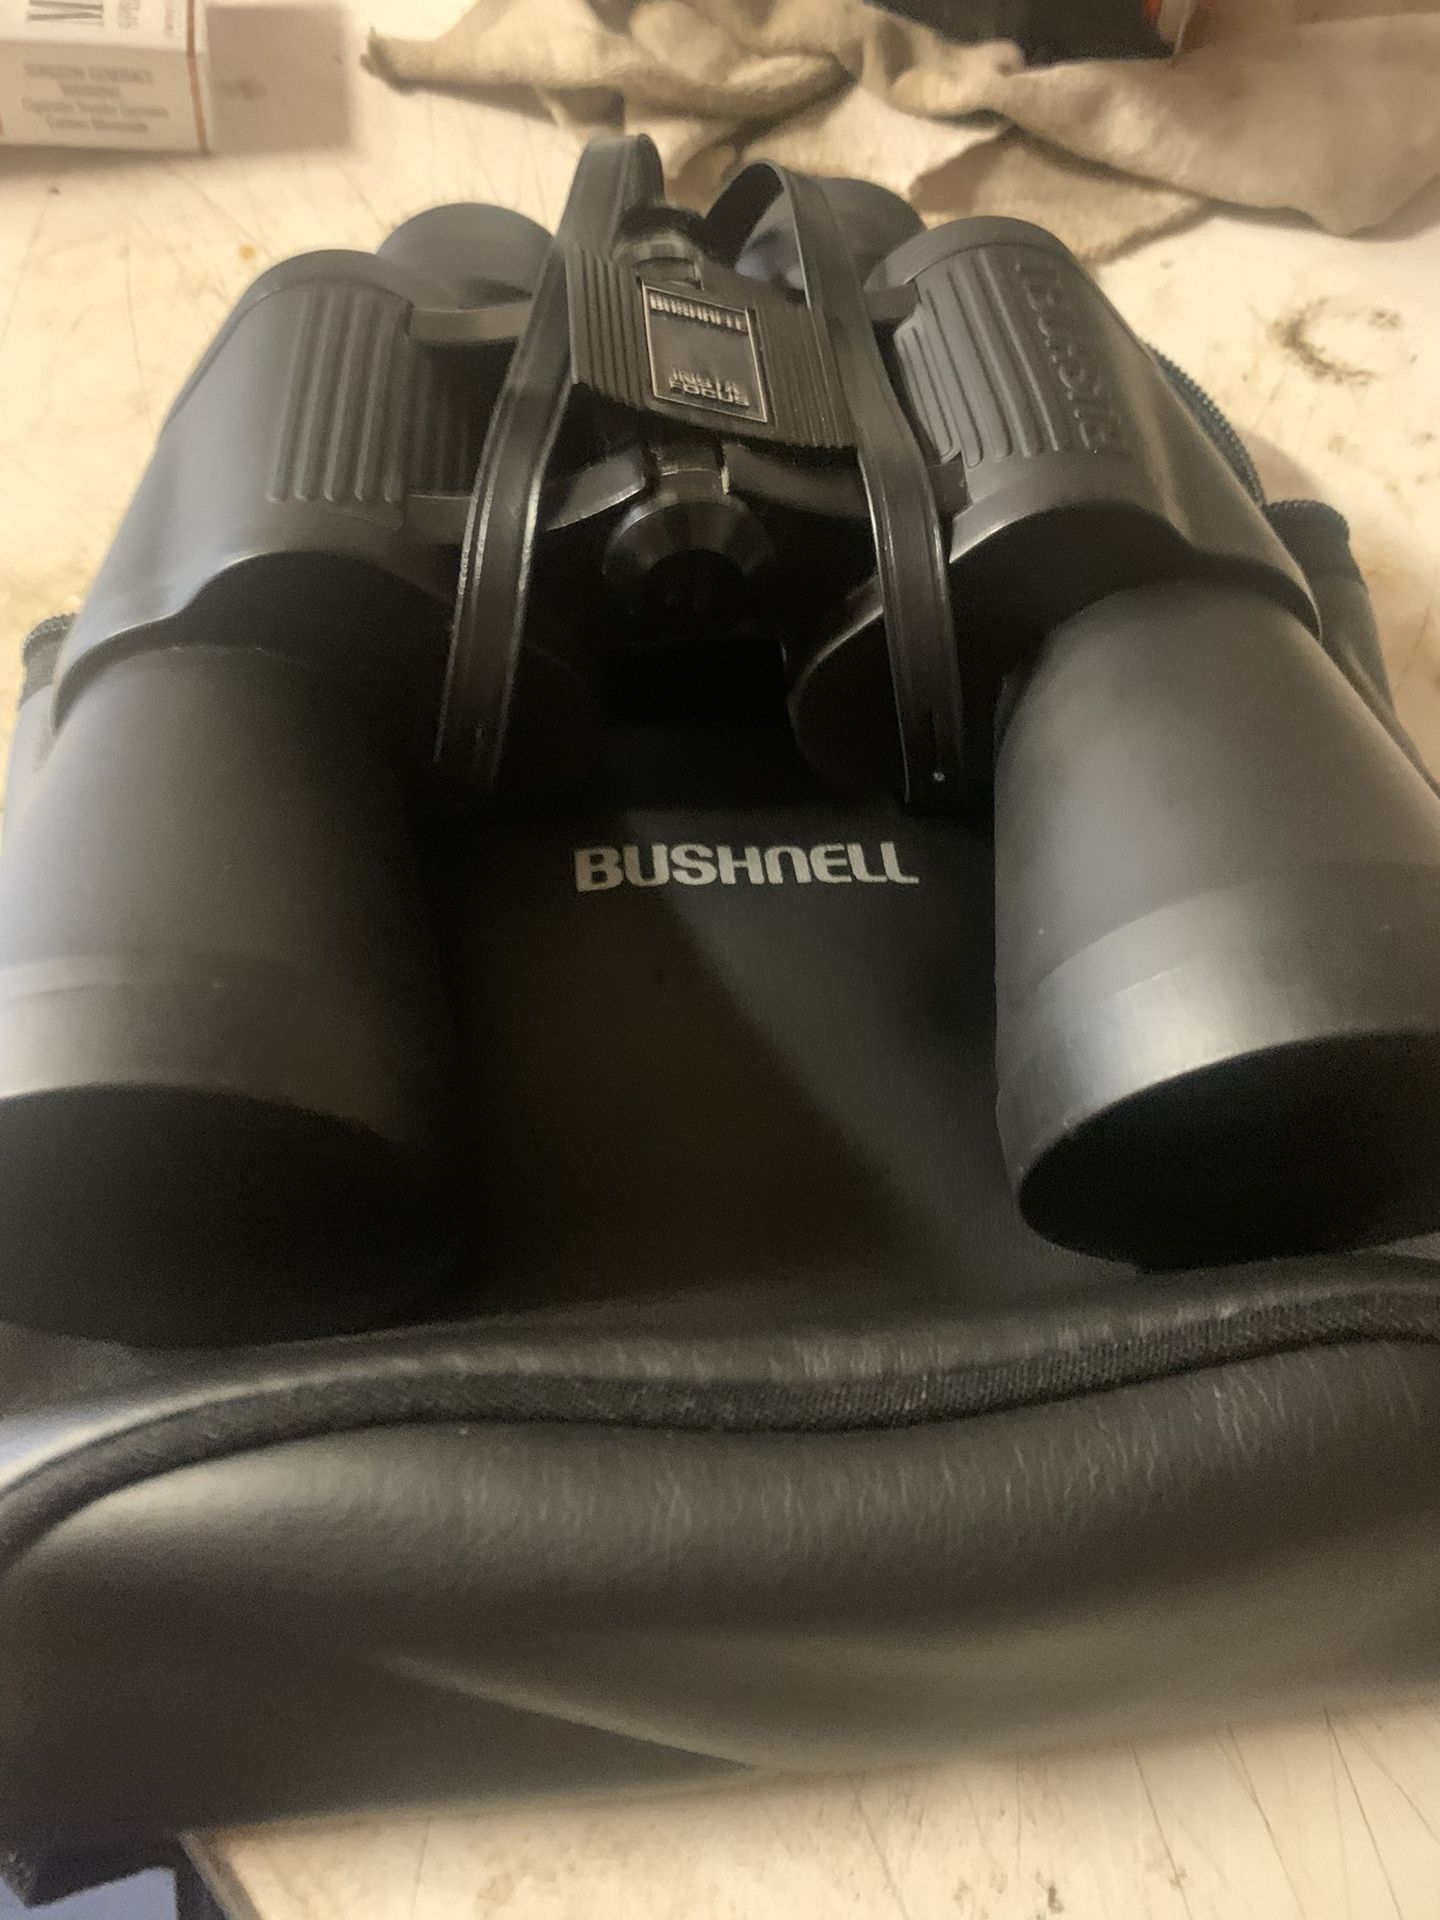 Brushnell Binoculars 